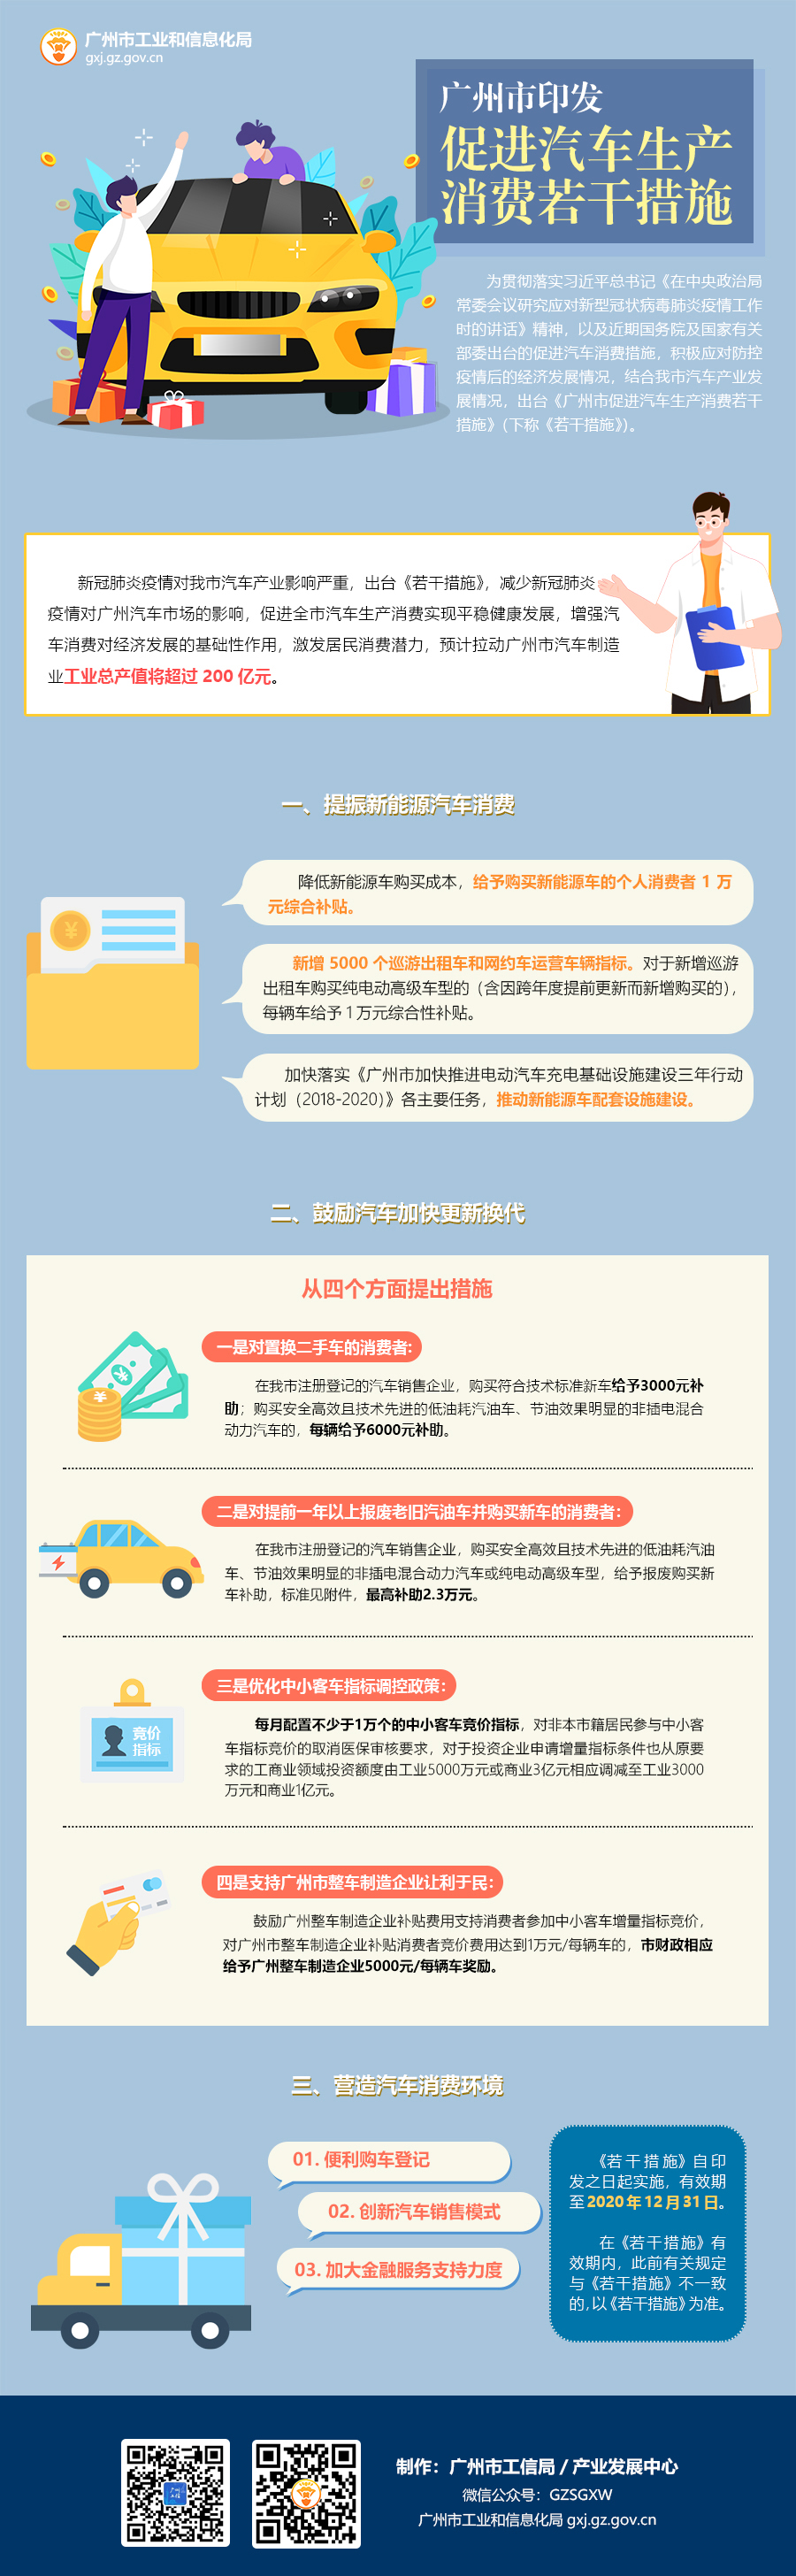 关于印发广州市促进汽车生产消费若干措施.jpg